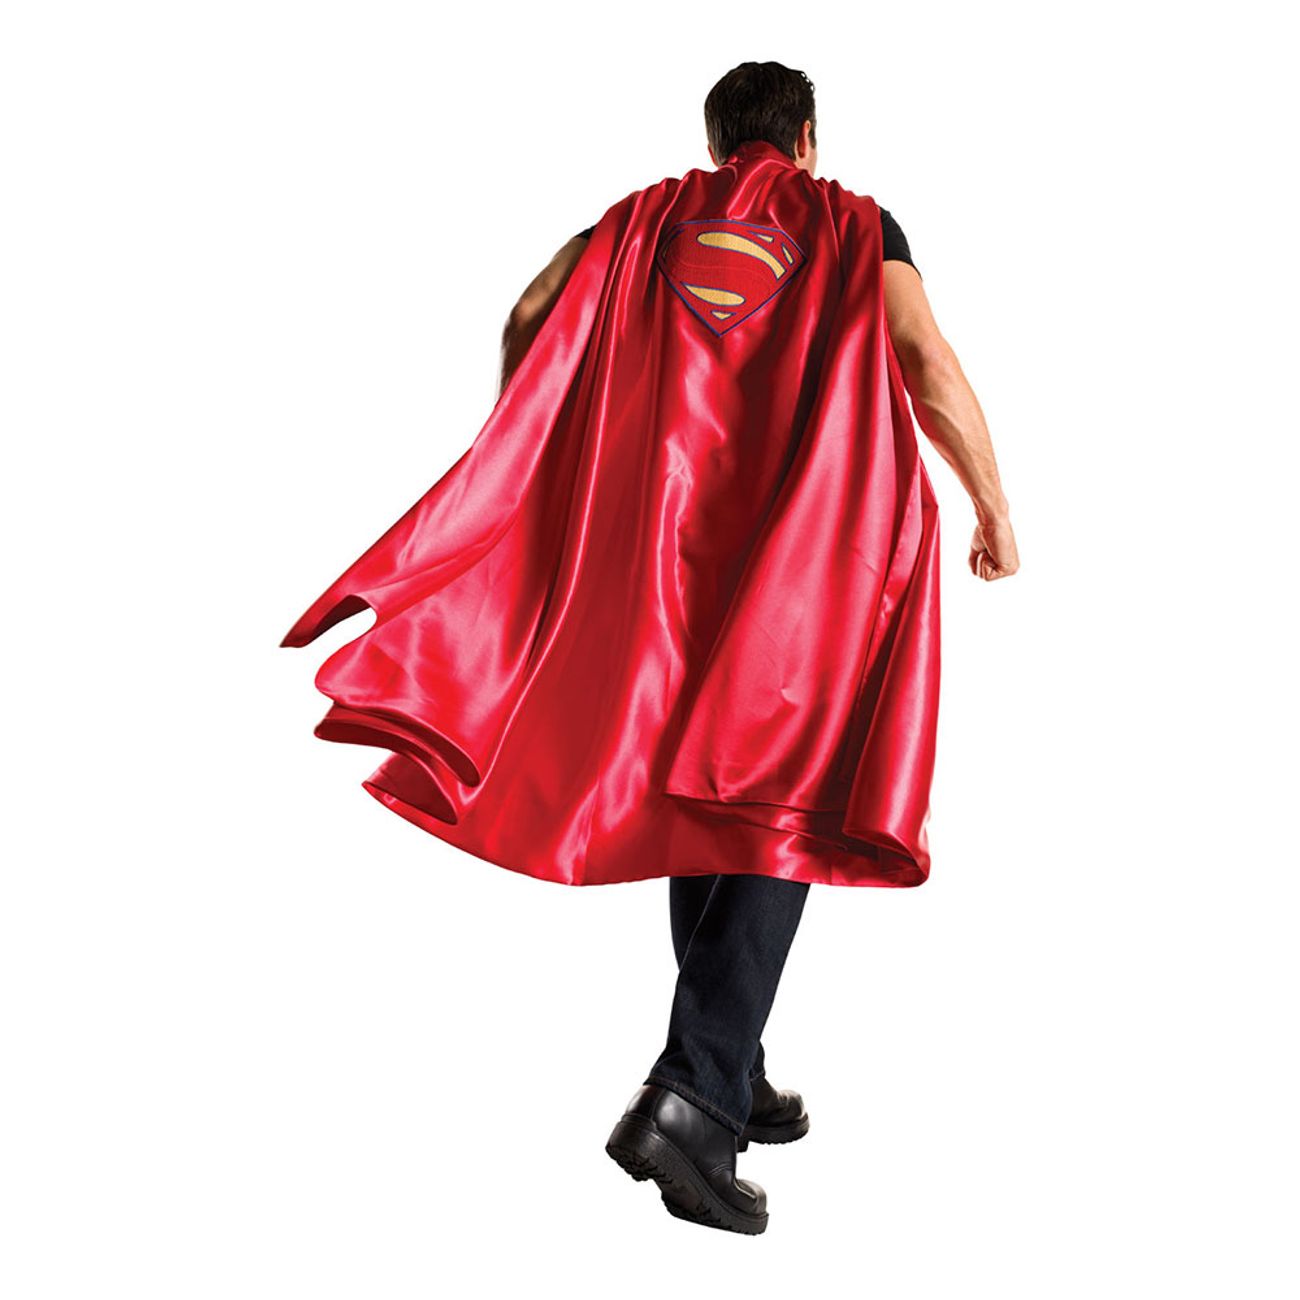 superman-cape-deluxe-1